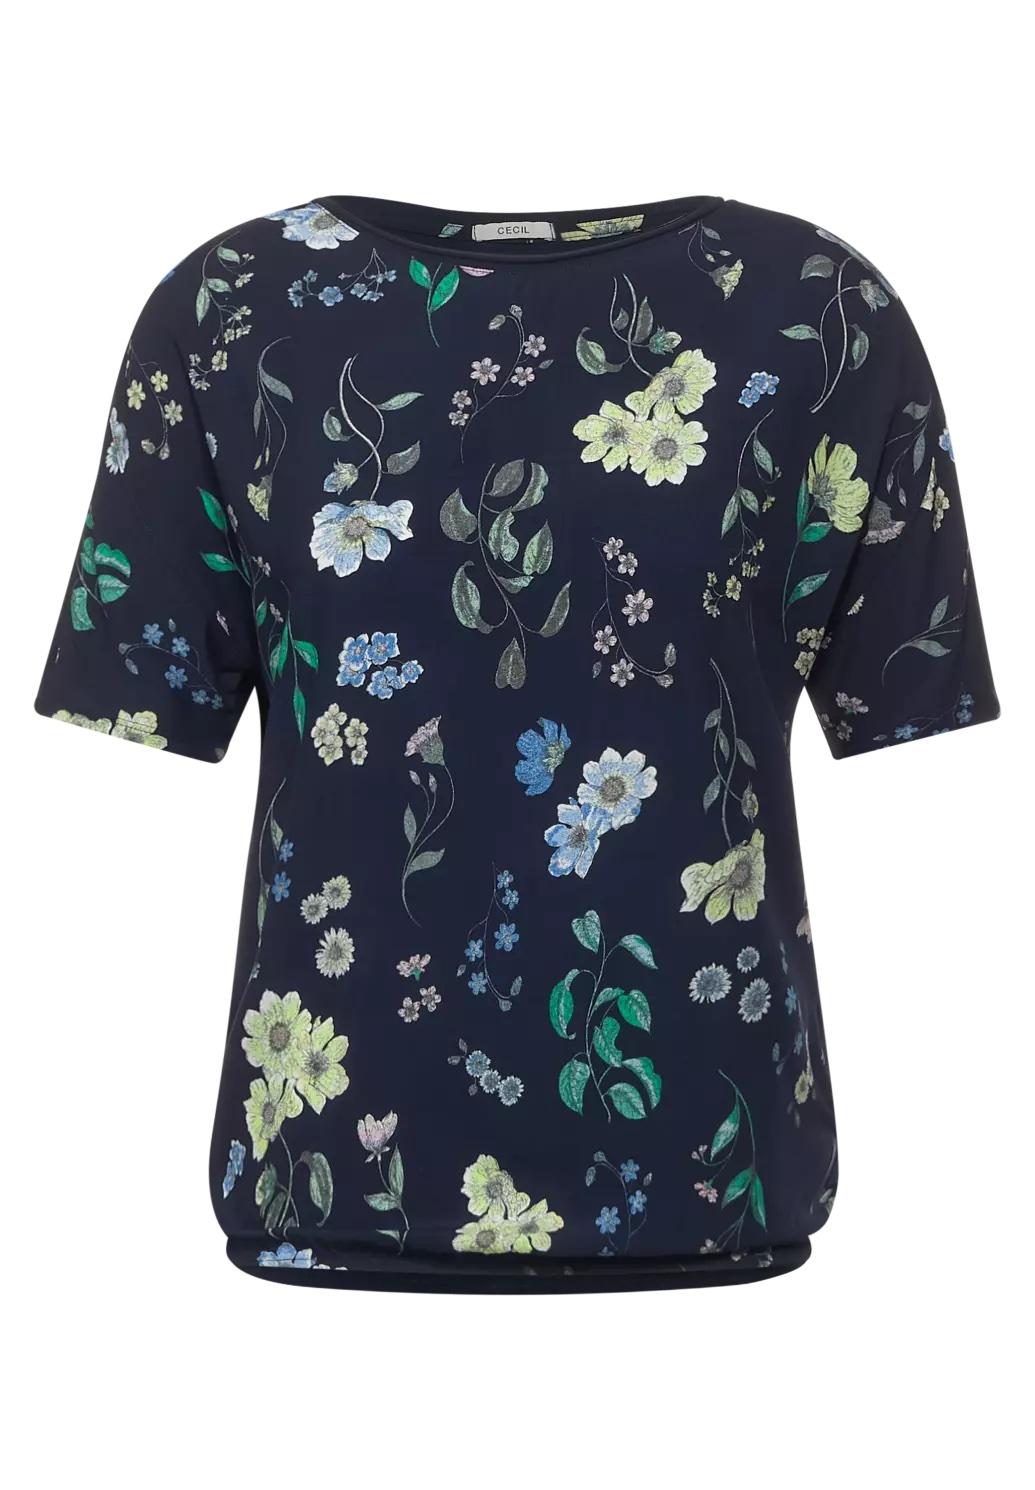 CECIL tričko s kvetinovou potlačou, modr